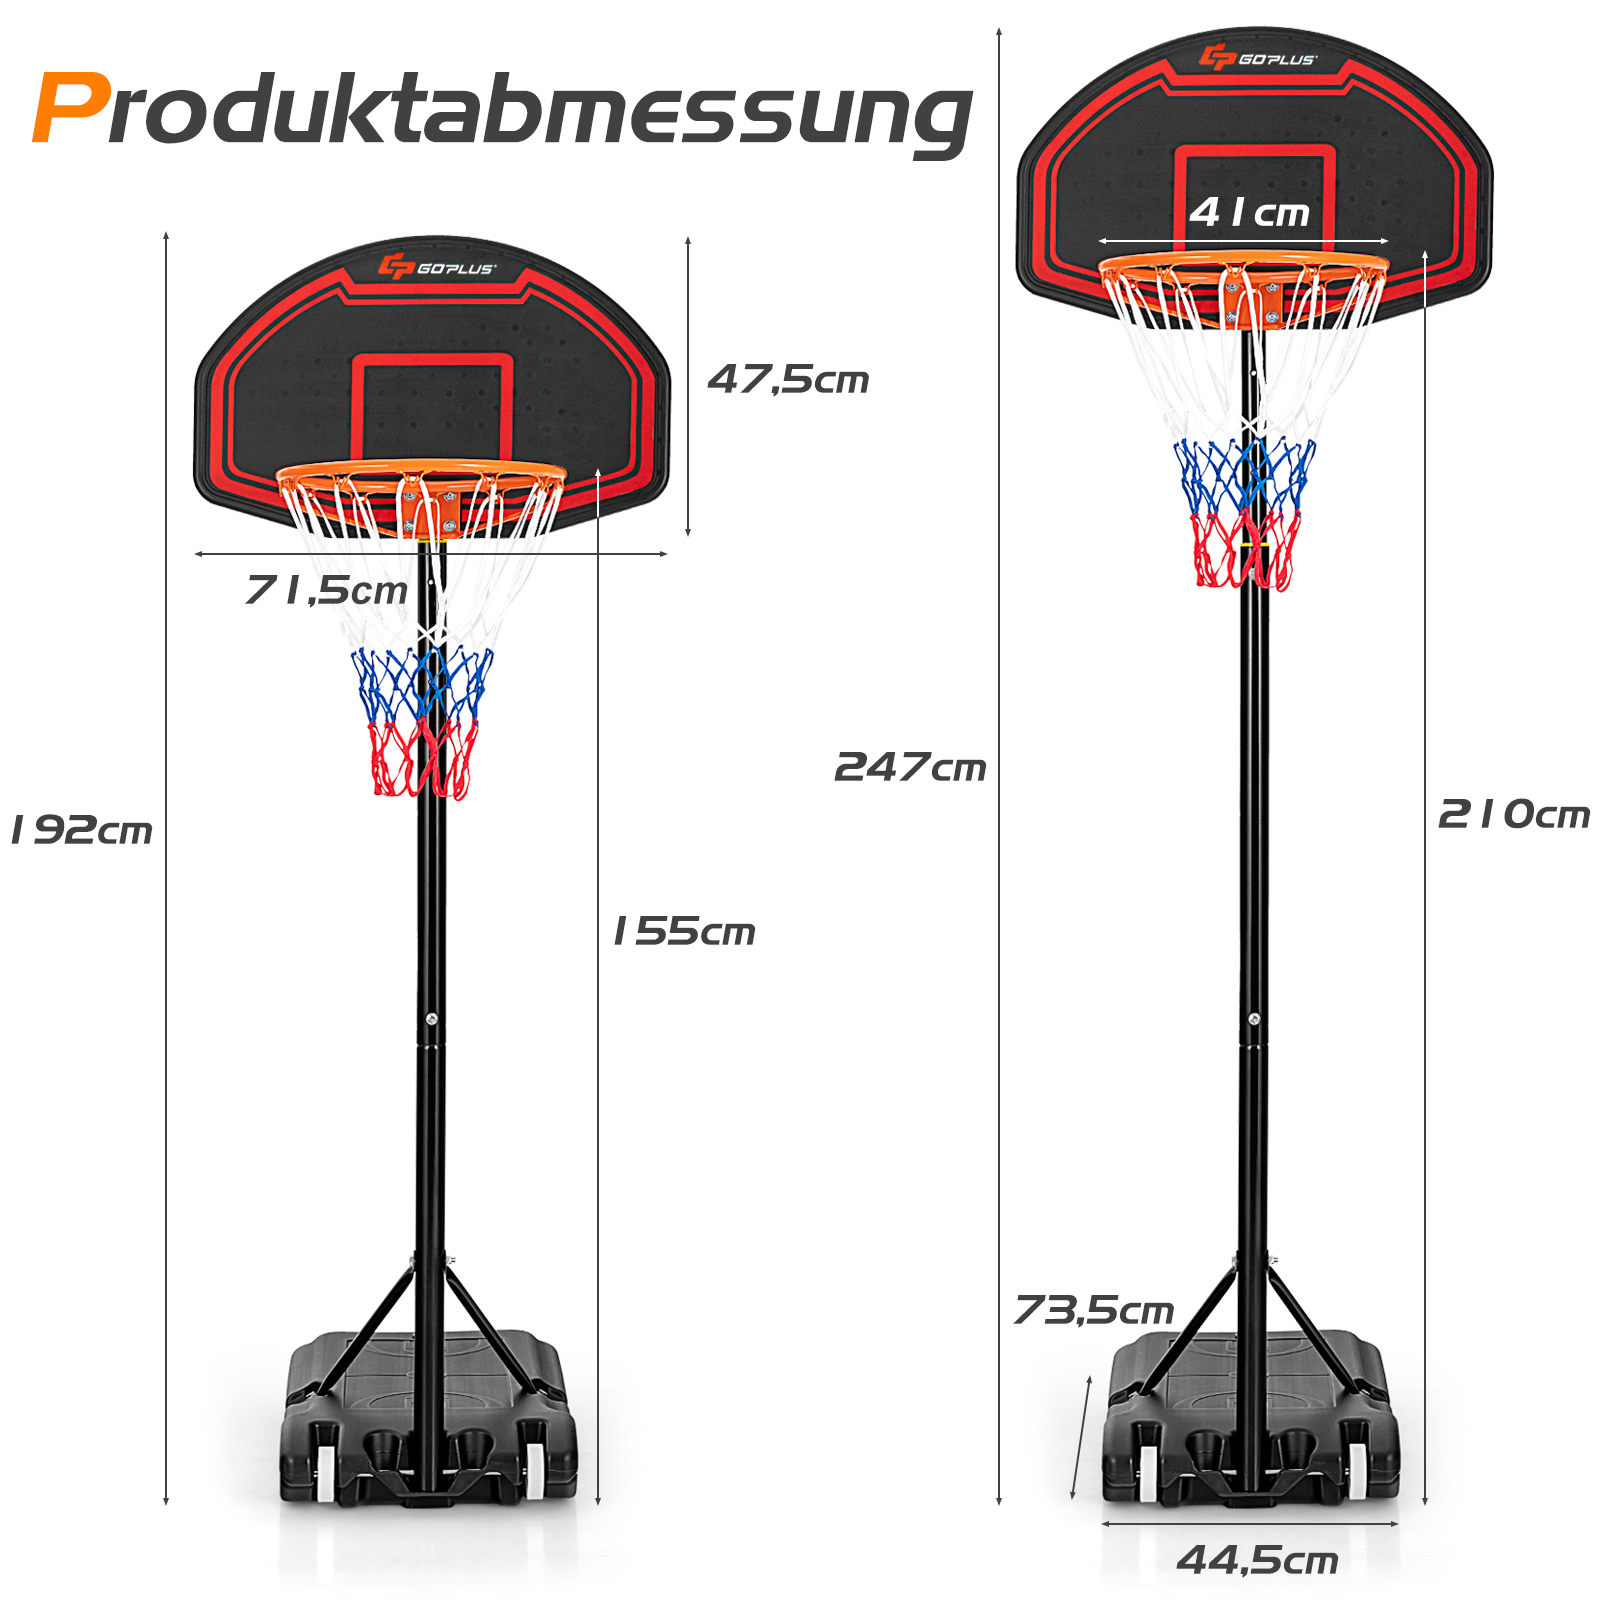 COSTWAY Basketballständer 155-210cm Schwarz höhenverstellbar Gartenspielzeug